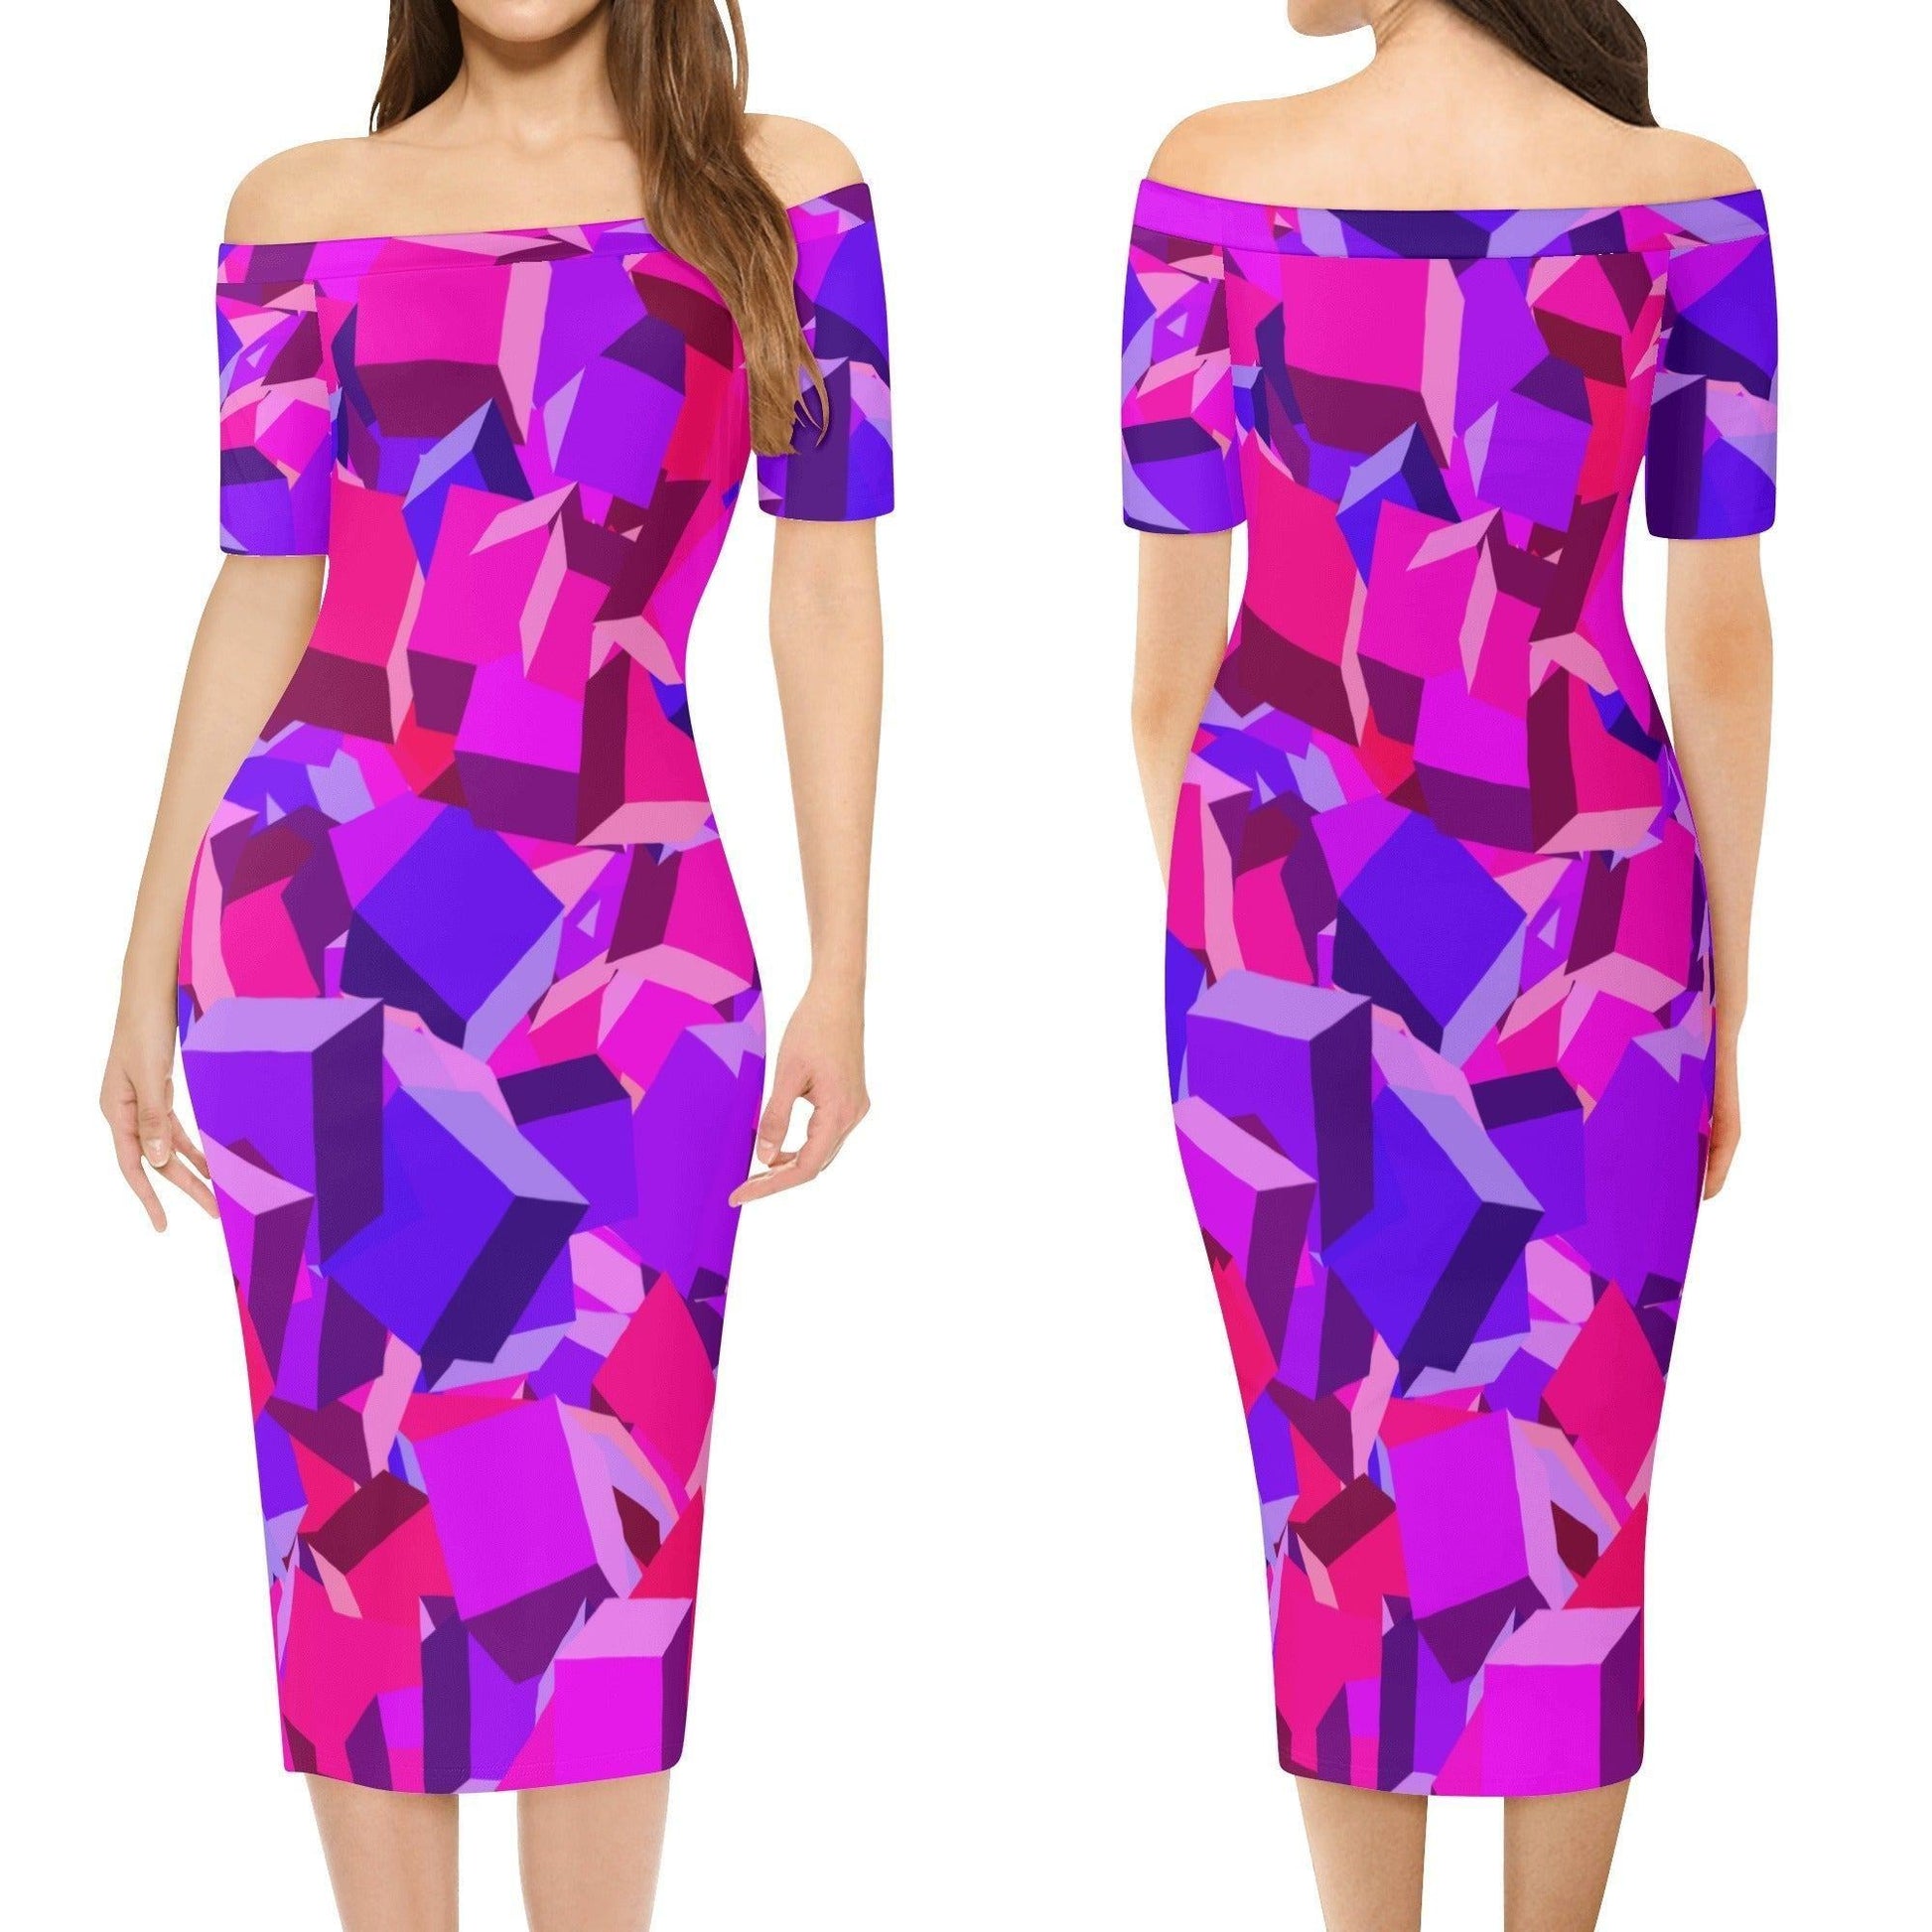 Pink Cube Off-Shoulder-Kleid -- Pink Cube Off-Shoulder-Kleid - undefined Off-Shoulder-Kleid | JLR Design